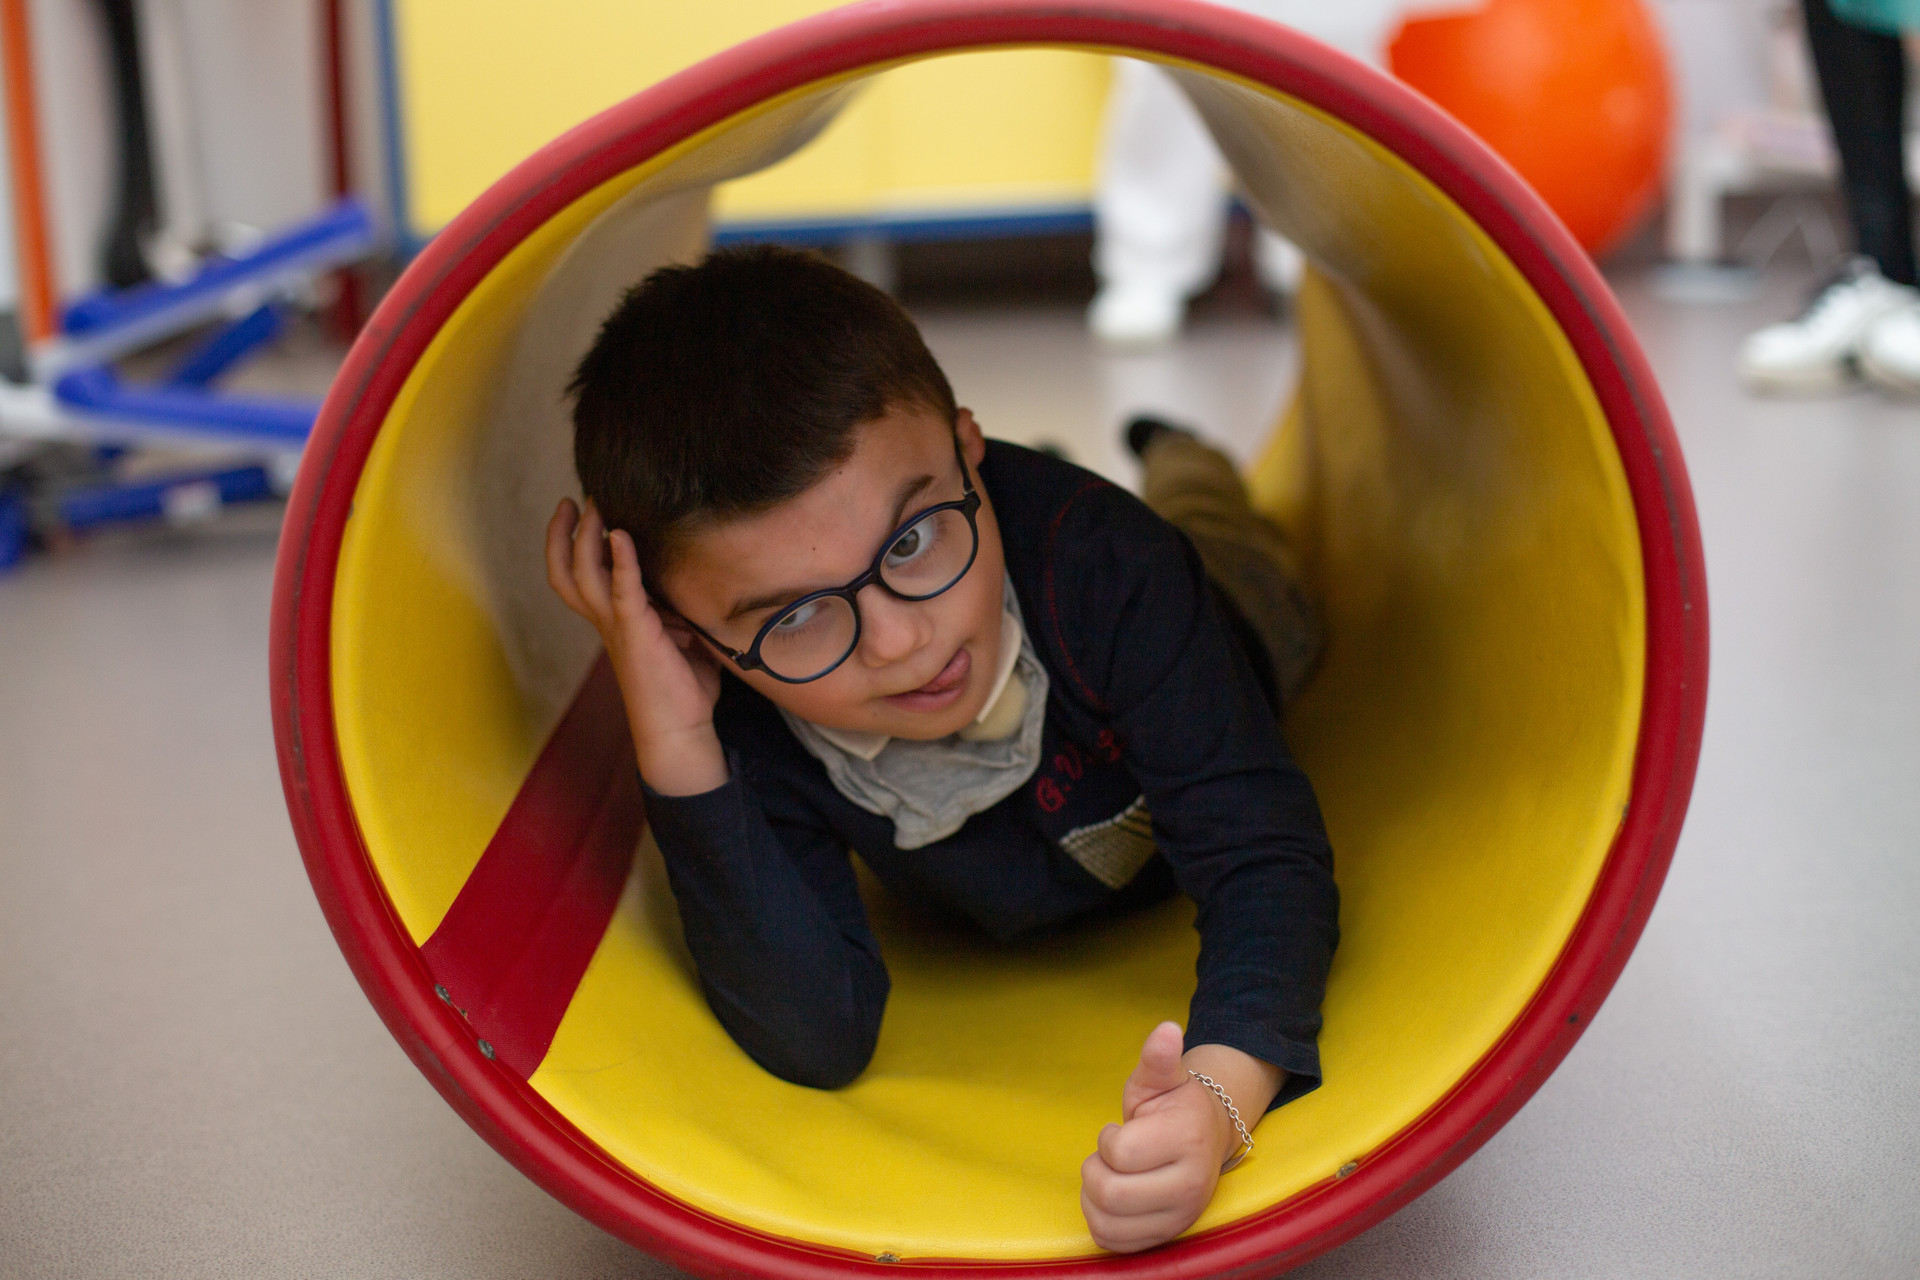 Leonardo bambino di 5 anni si affaccia da dentro un grande tubo rosso e giallo, durante una seduta di fisioterapia